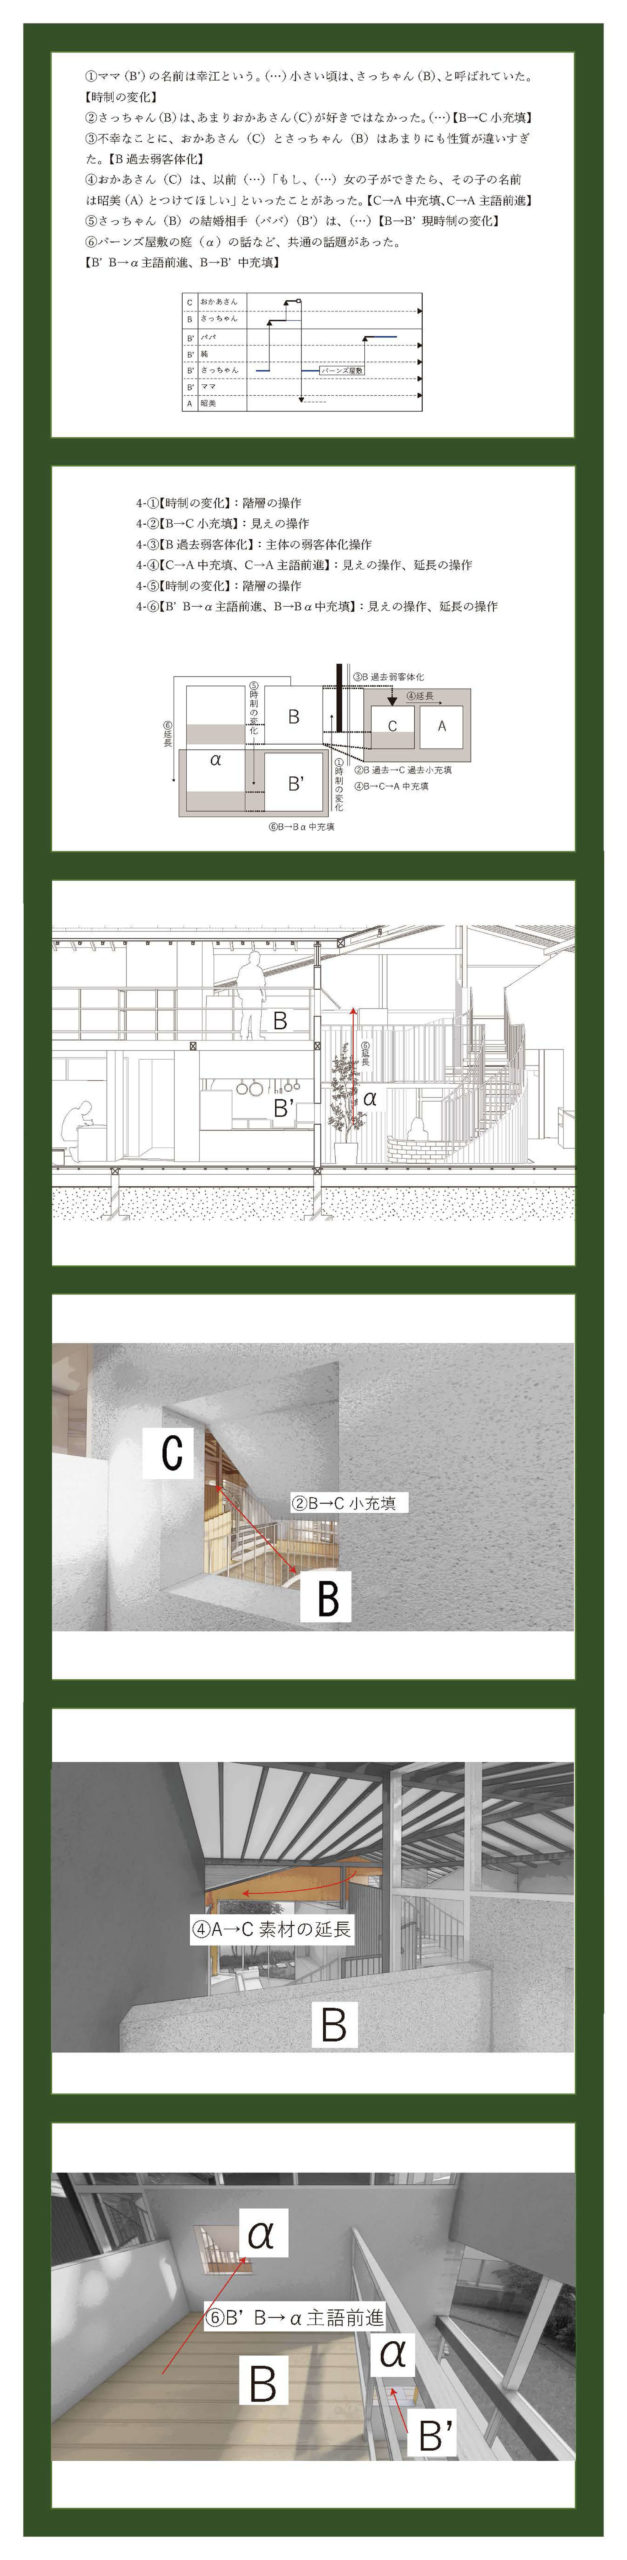 小説構造を応用した建築の提案 -梨木香歩『裏庭』の分析を通して--6